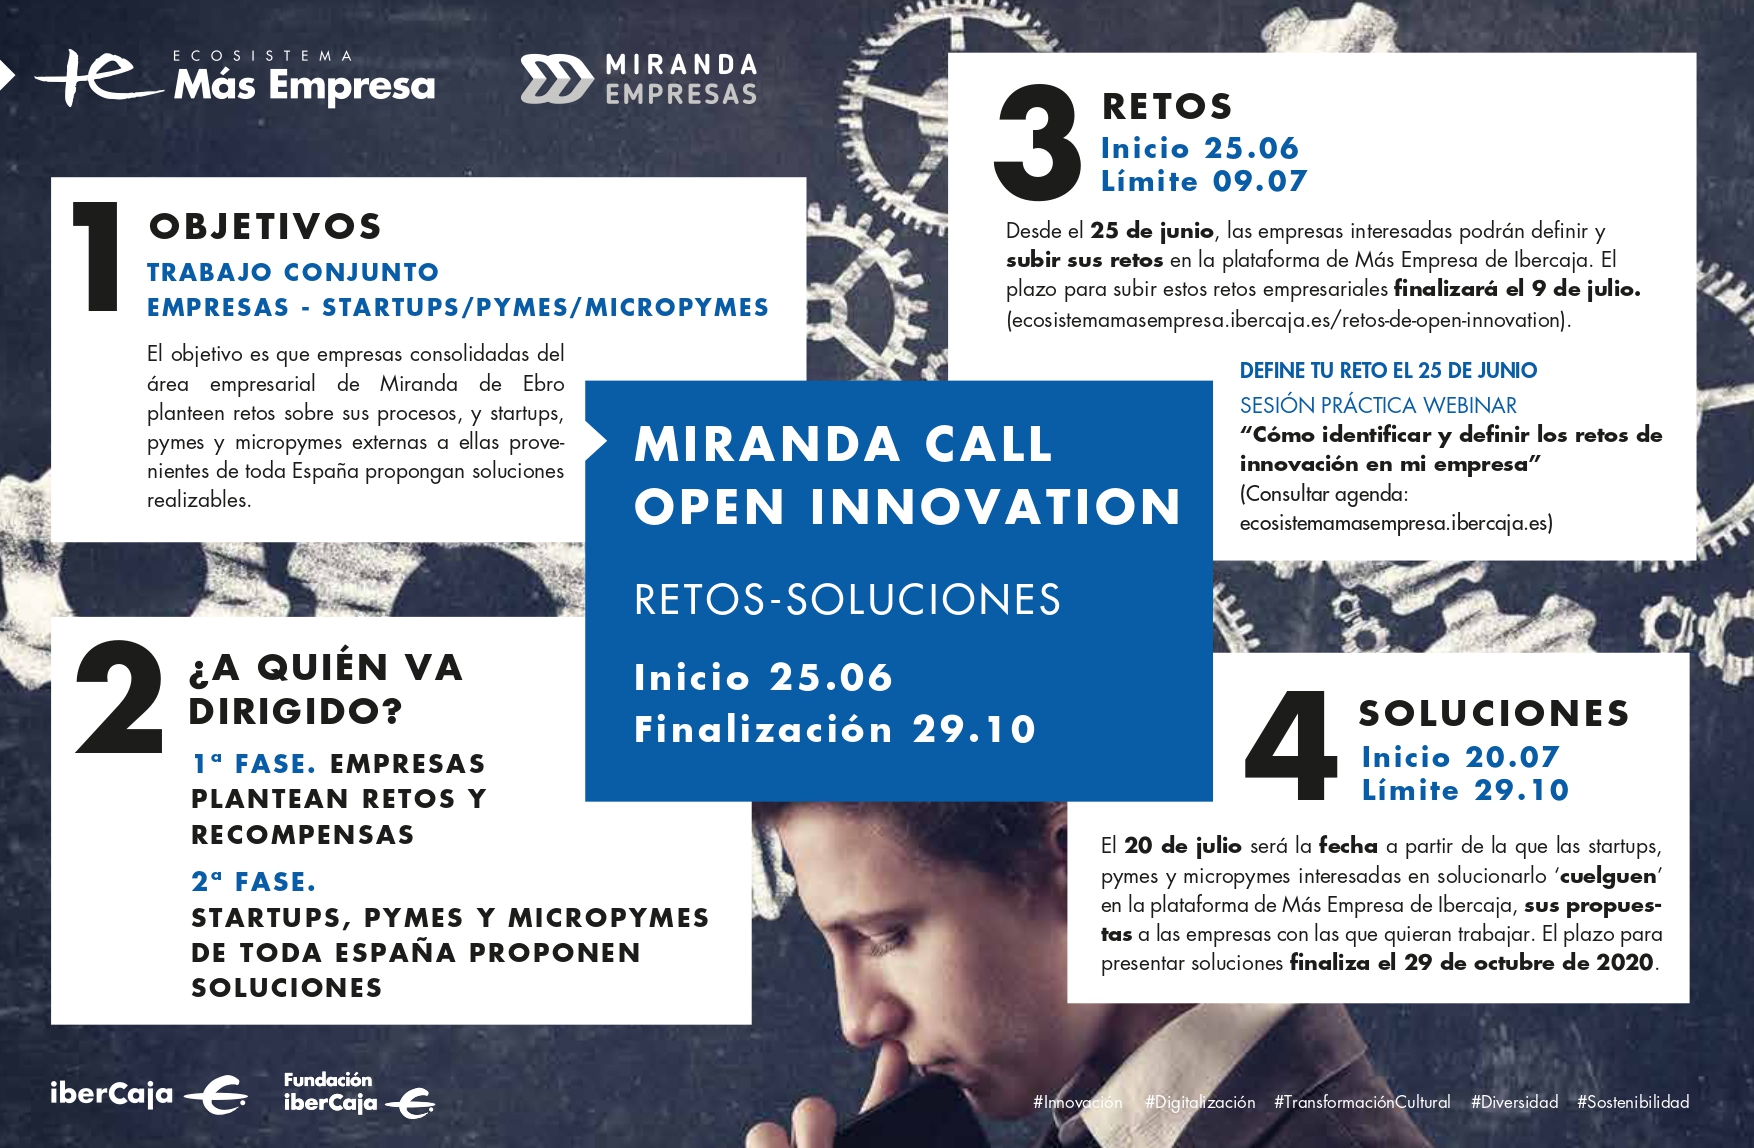 ‘Miranda Call Open Innovation’, una llamada al trabajo conjunto entre empresas y startups / pymes / micropymes